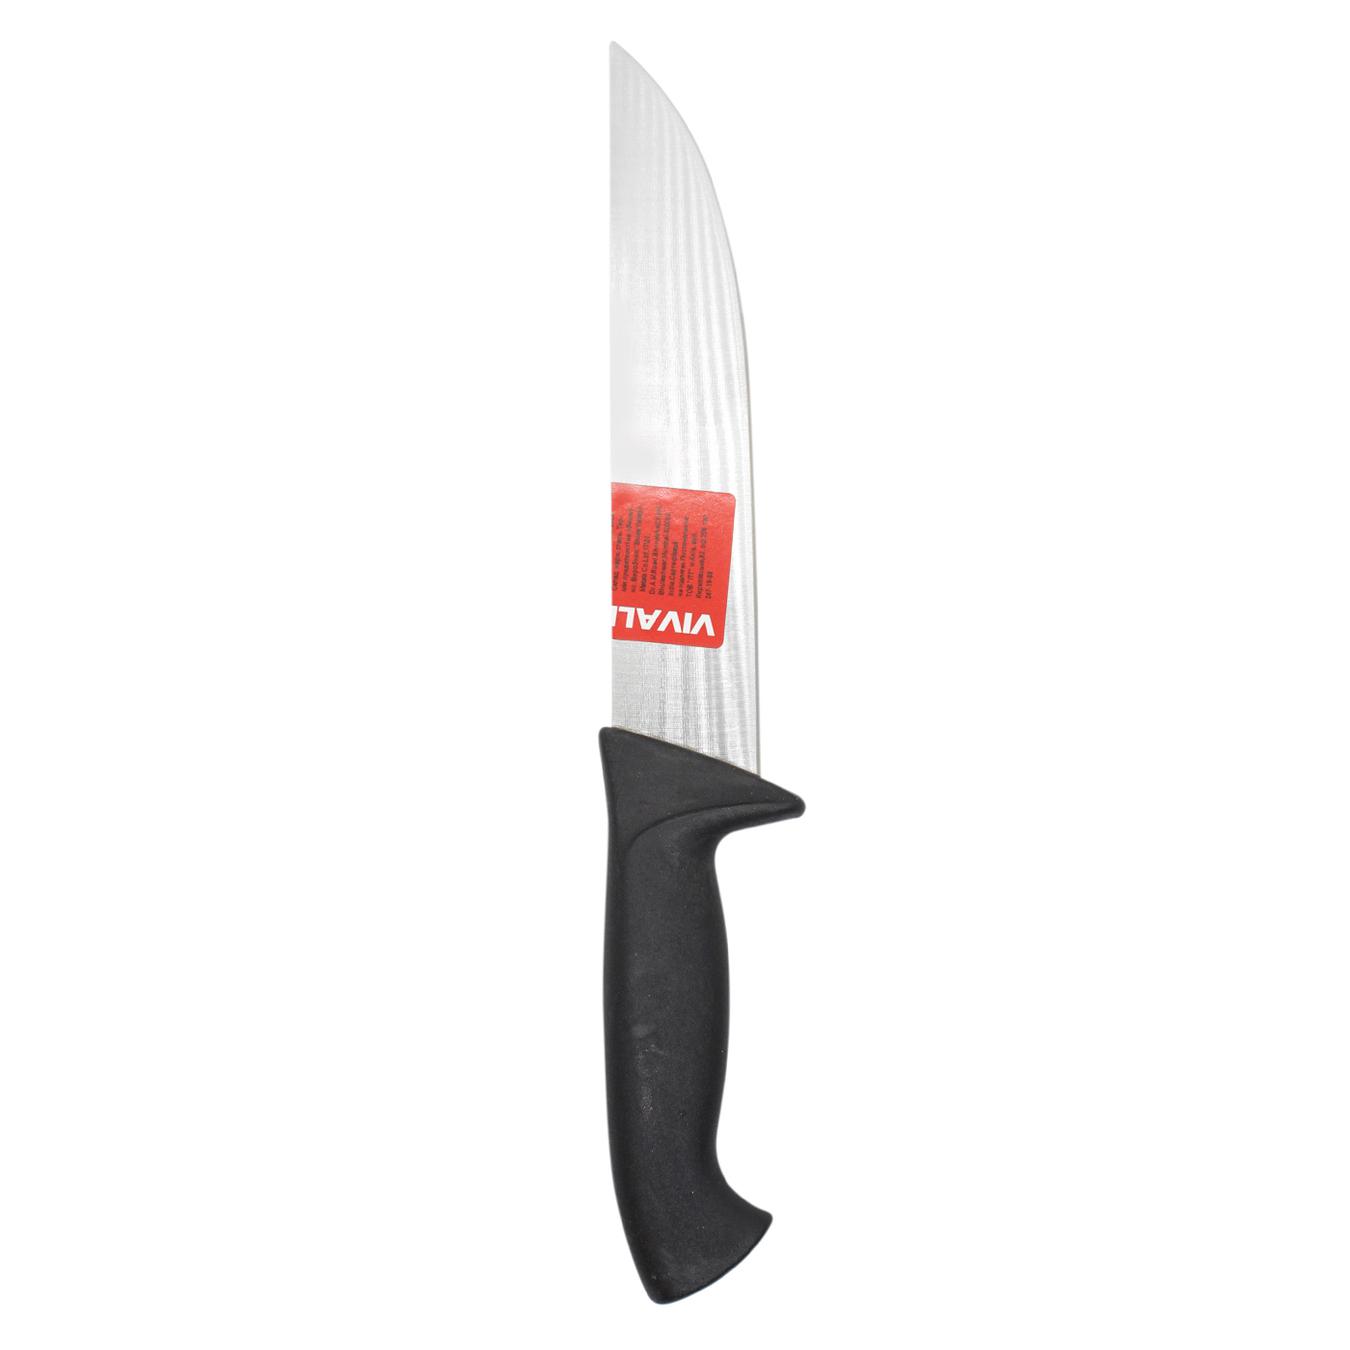 Table knife Vivalex 20cm